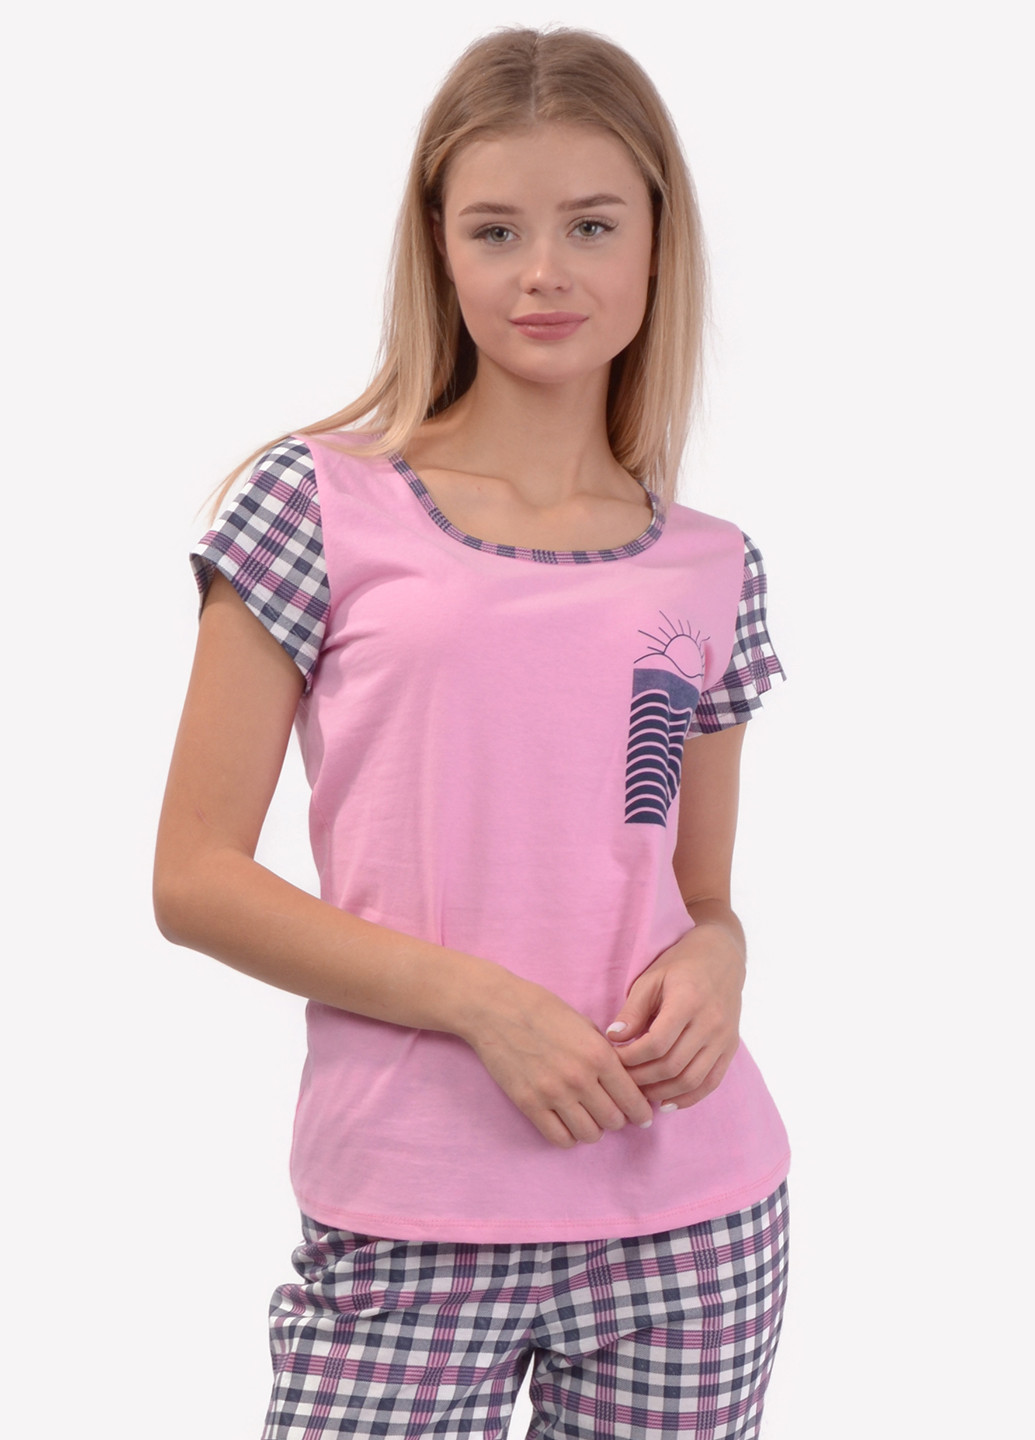 Розовая всесезон пижама (футболка, брюки) футболка + брюки NEL